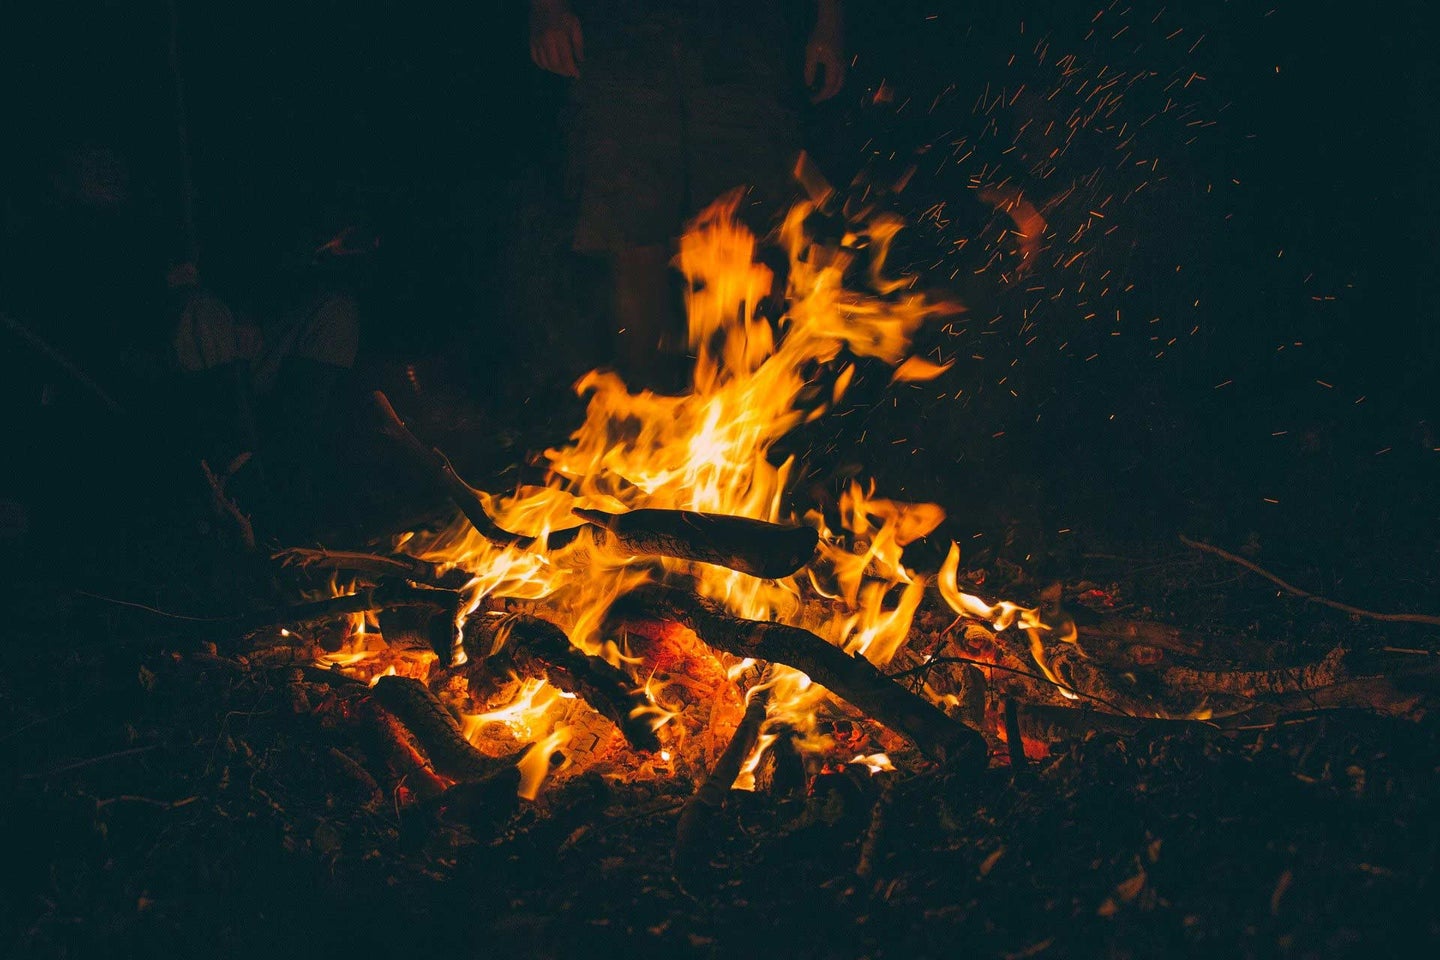 A campfire burning at night.